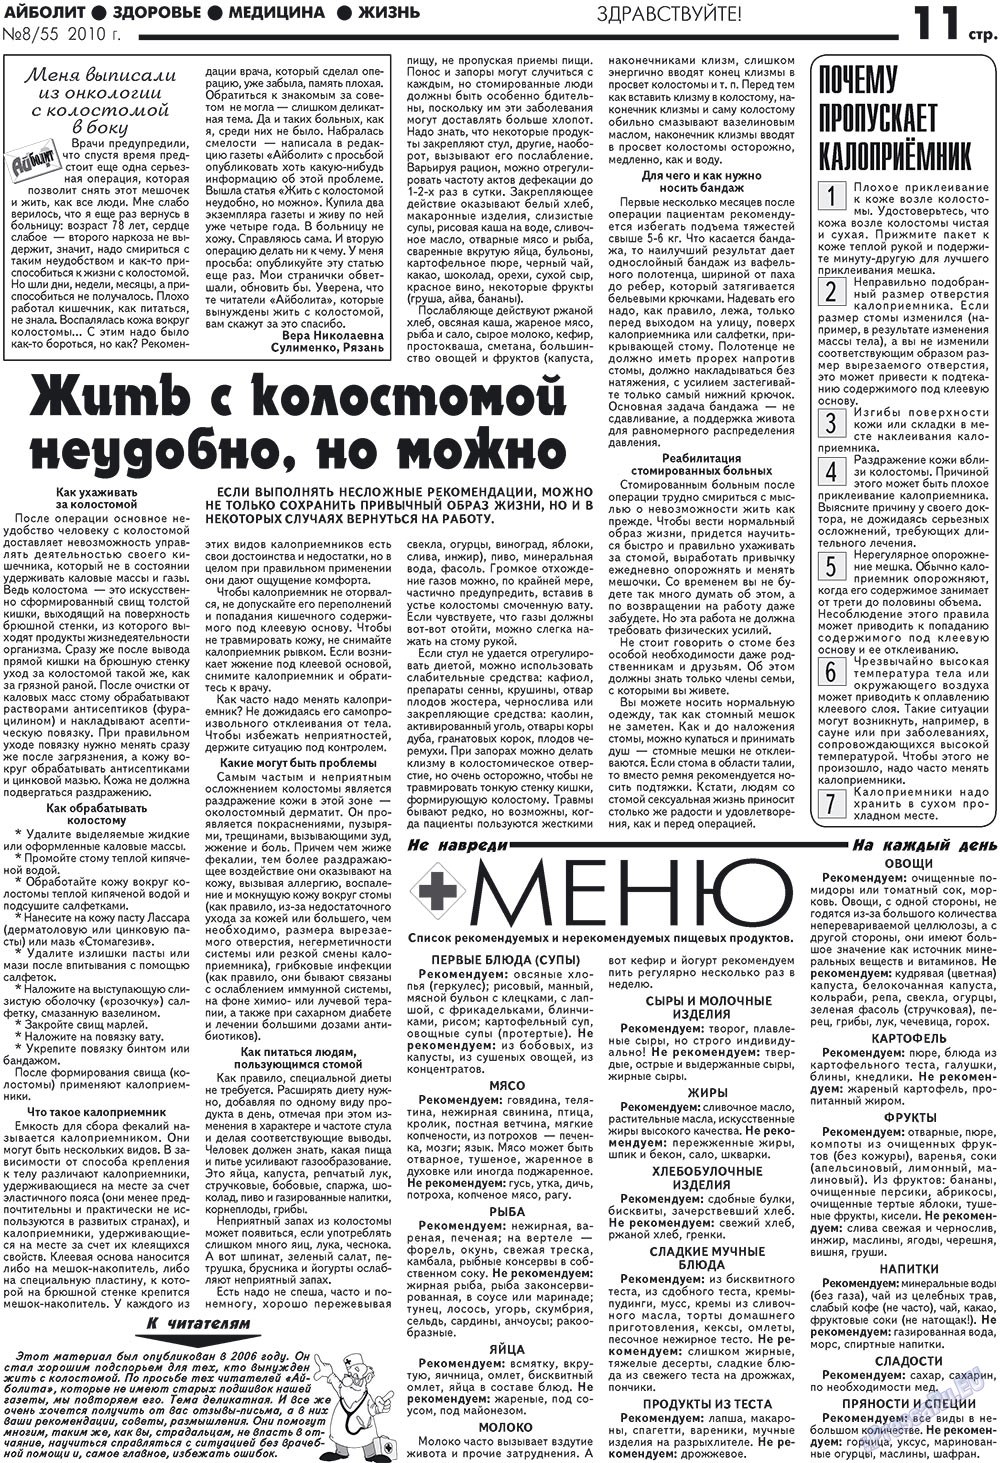 АйБолит, газета. 2010 №8 стр.11